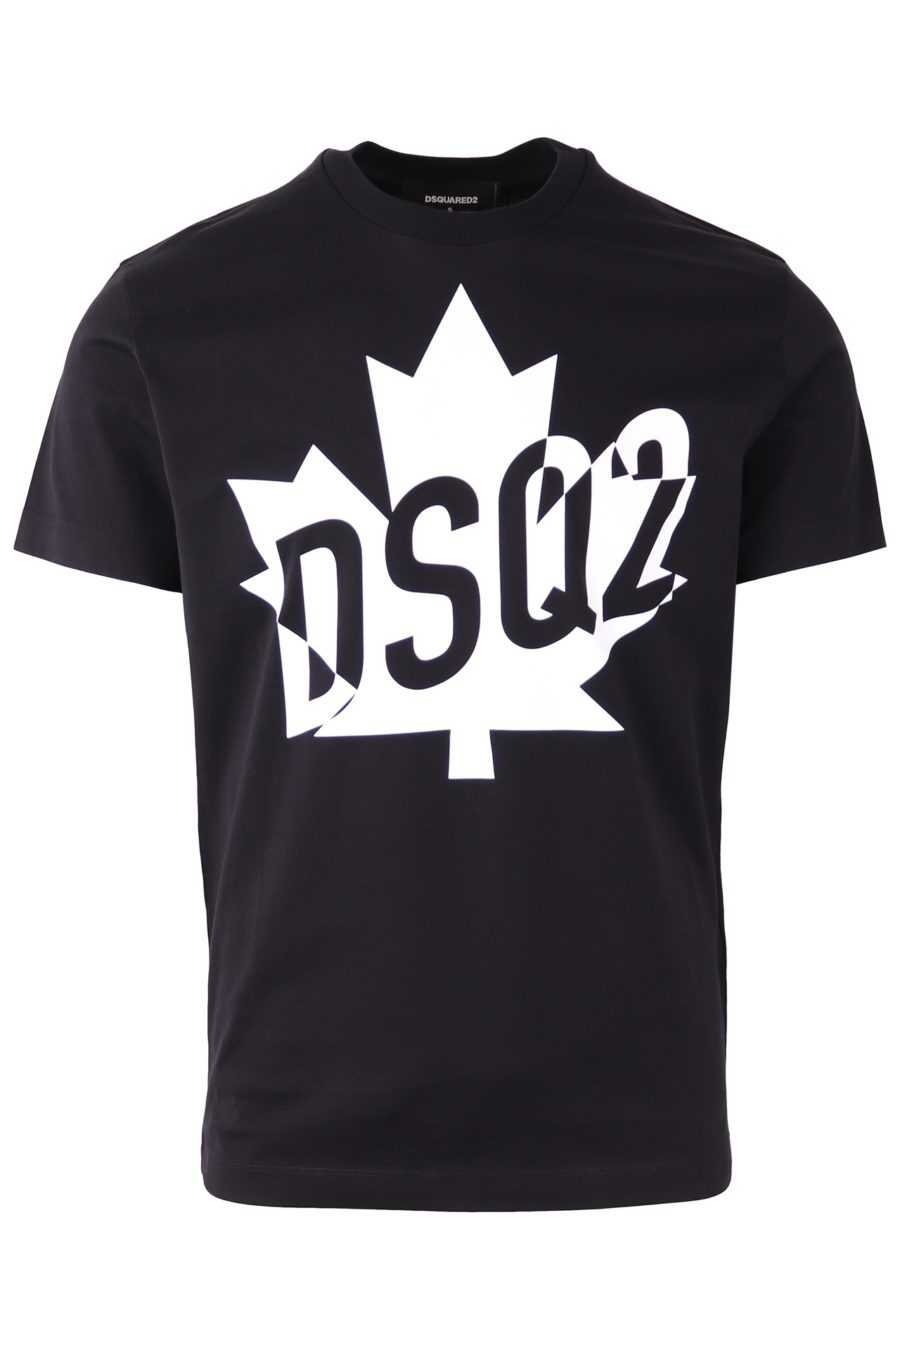 Camiseta Dsquared2 negra logo blanco DSQ2 - e459f248587e56b84a7b0c017f66fa5bc13df2d7